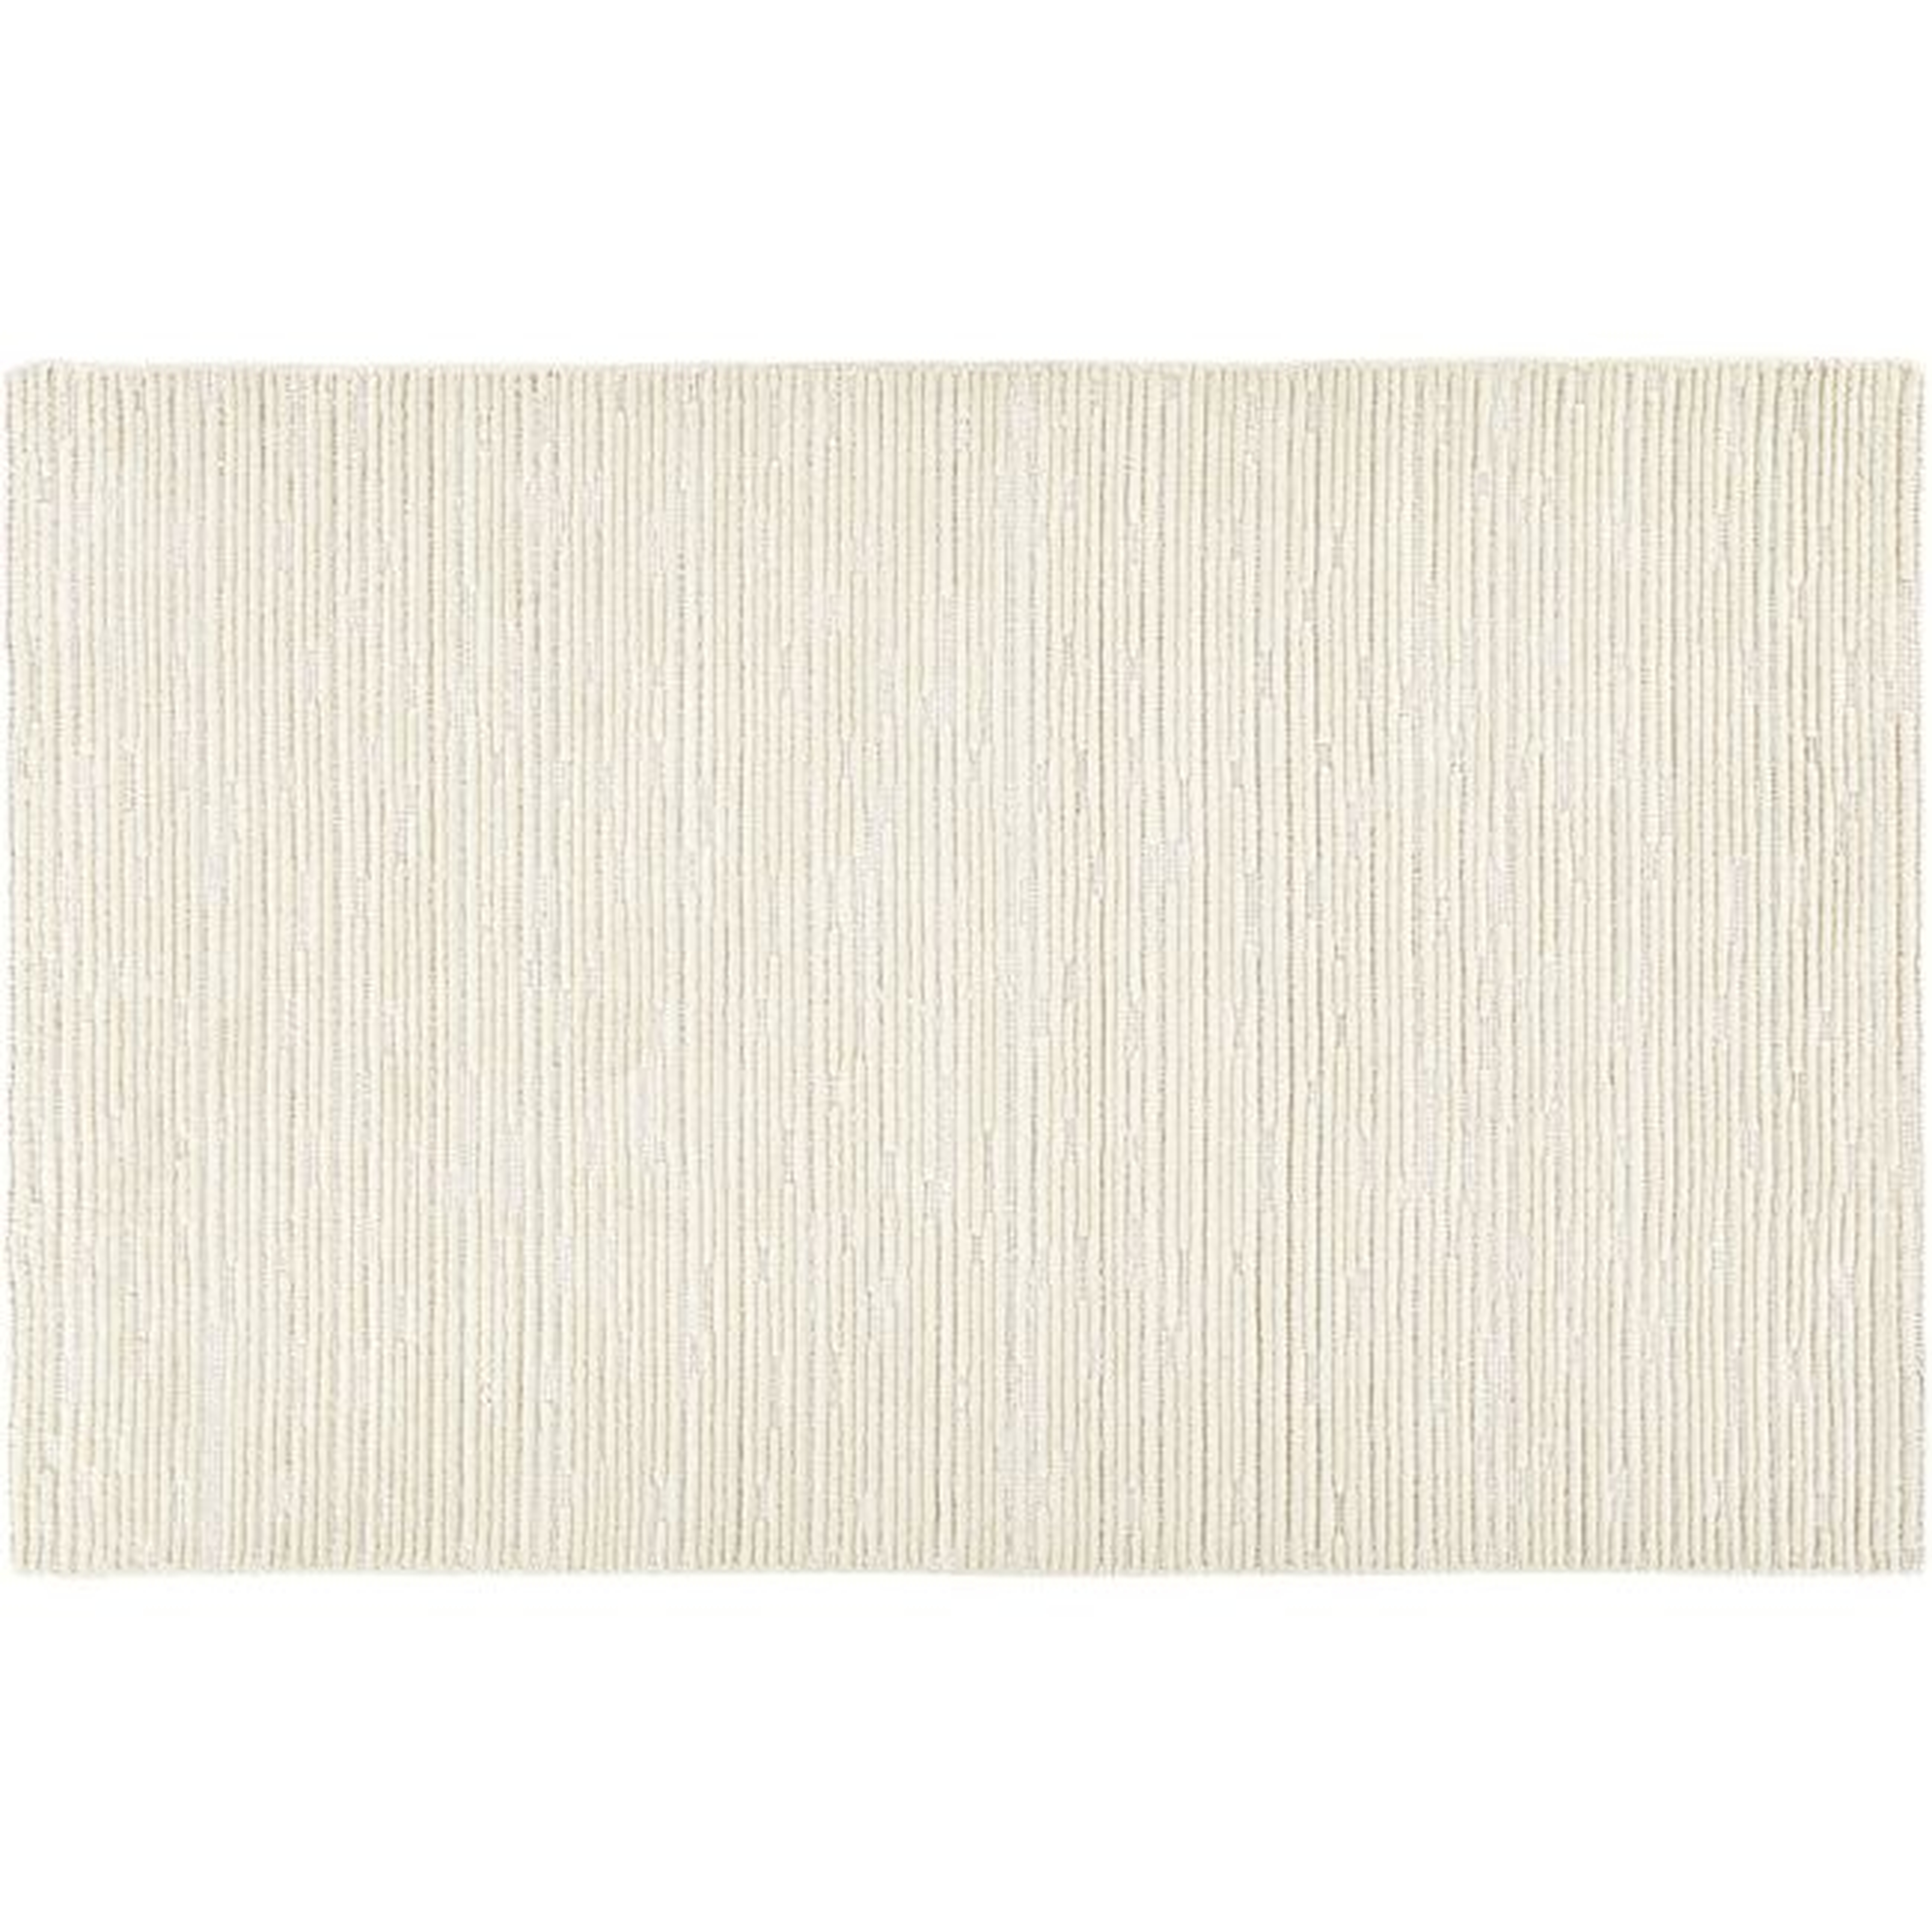 Elfen Ivory Textured Wool Rug 8'x10' - CB2